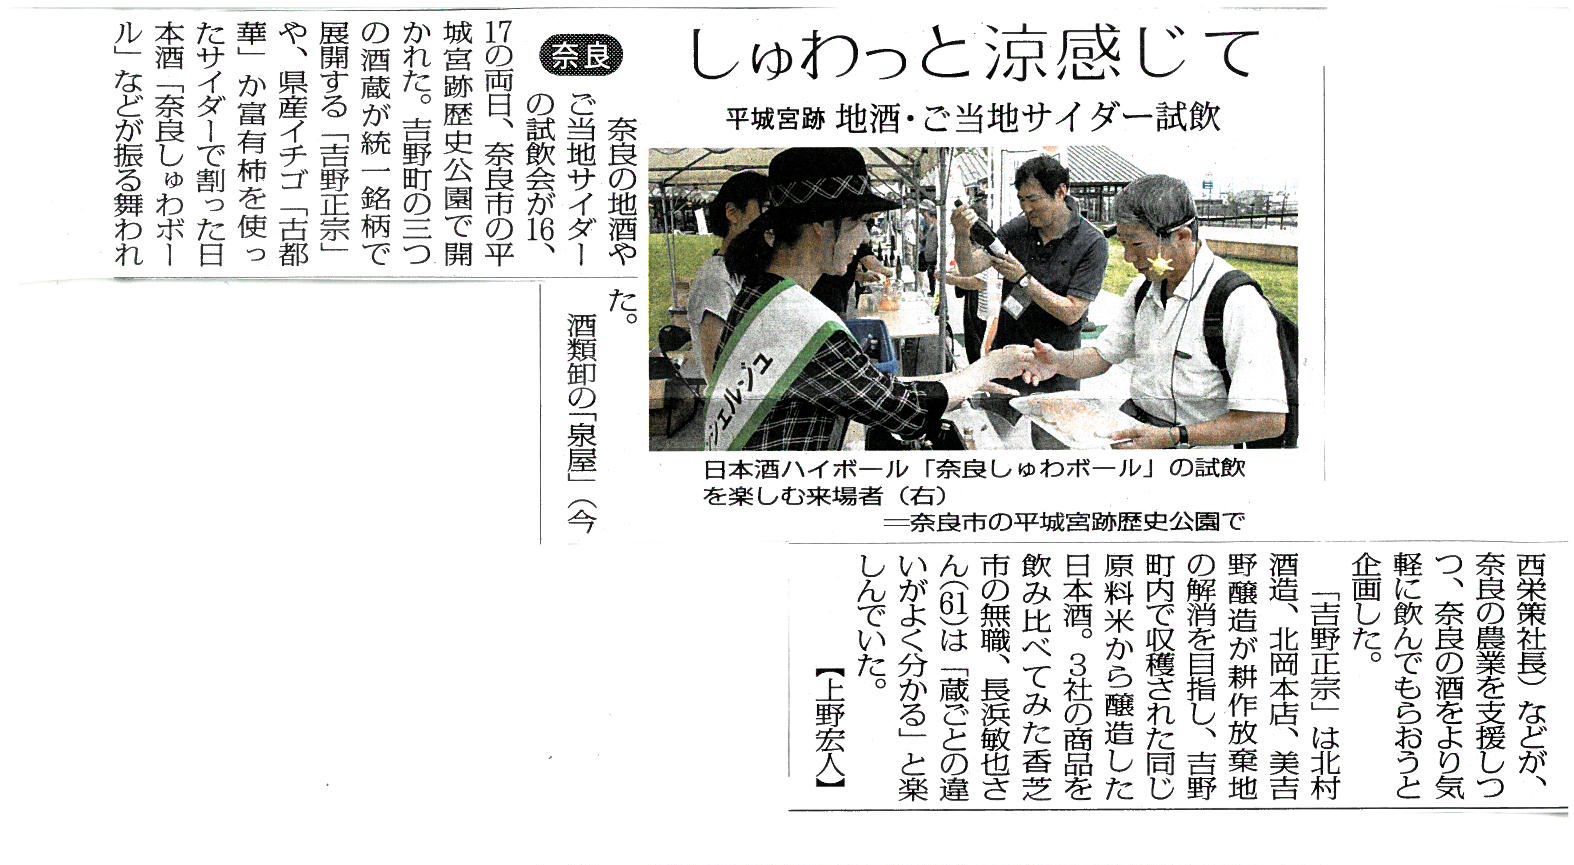 7/16～17「奈良酒祭り」が毎日新聞様に掲載されました！